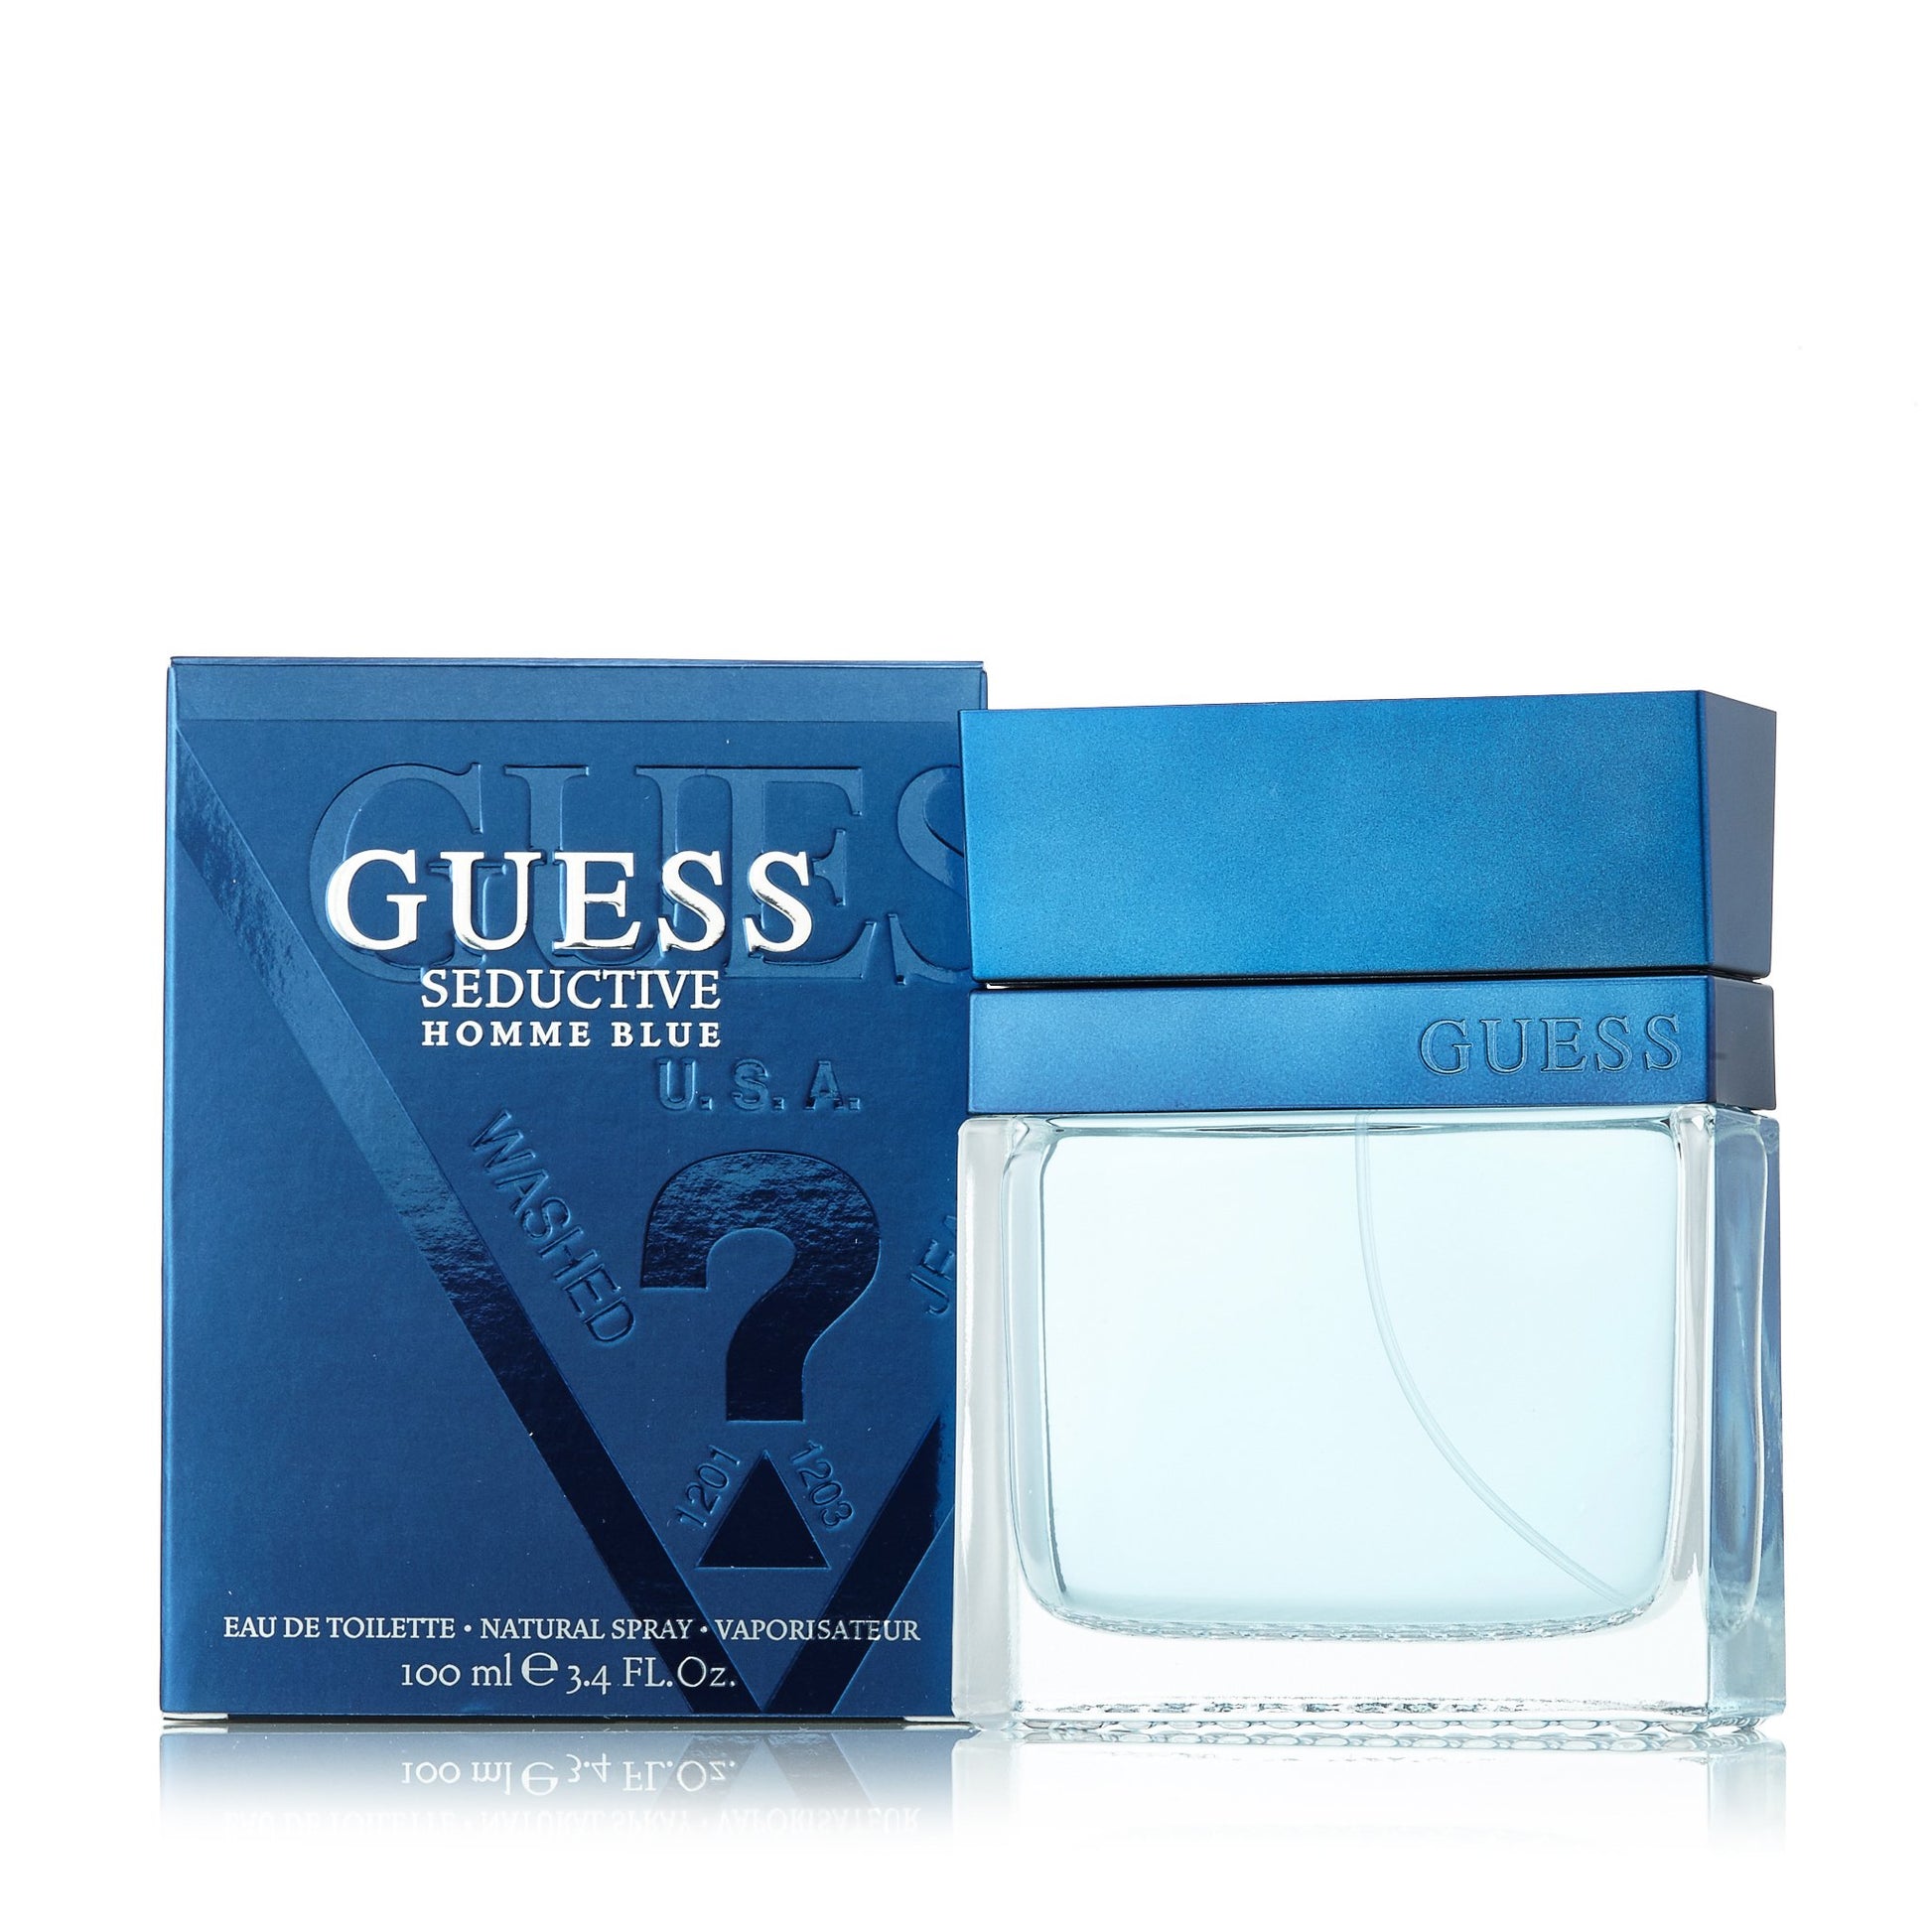 Seductive Homme Blue Eau de Toilette Spray for Men by Guess 3.4 oz. Click to open in modal